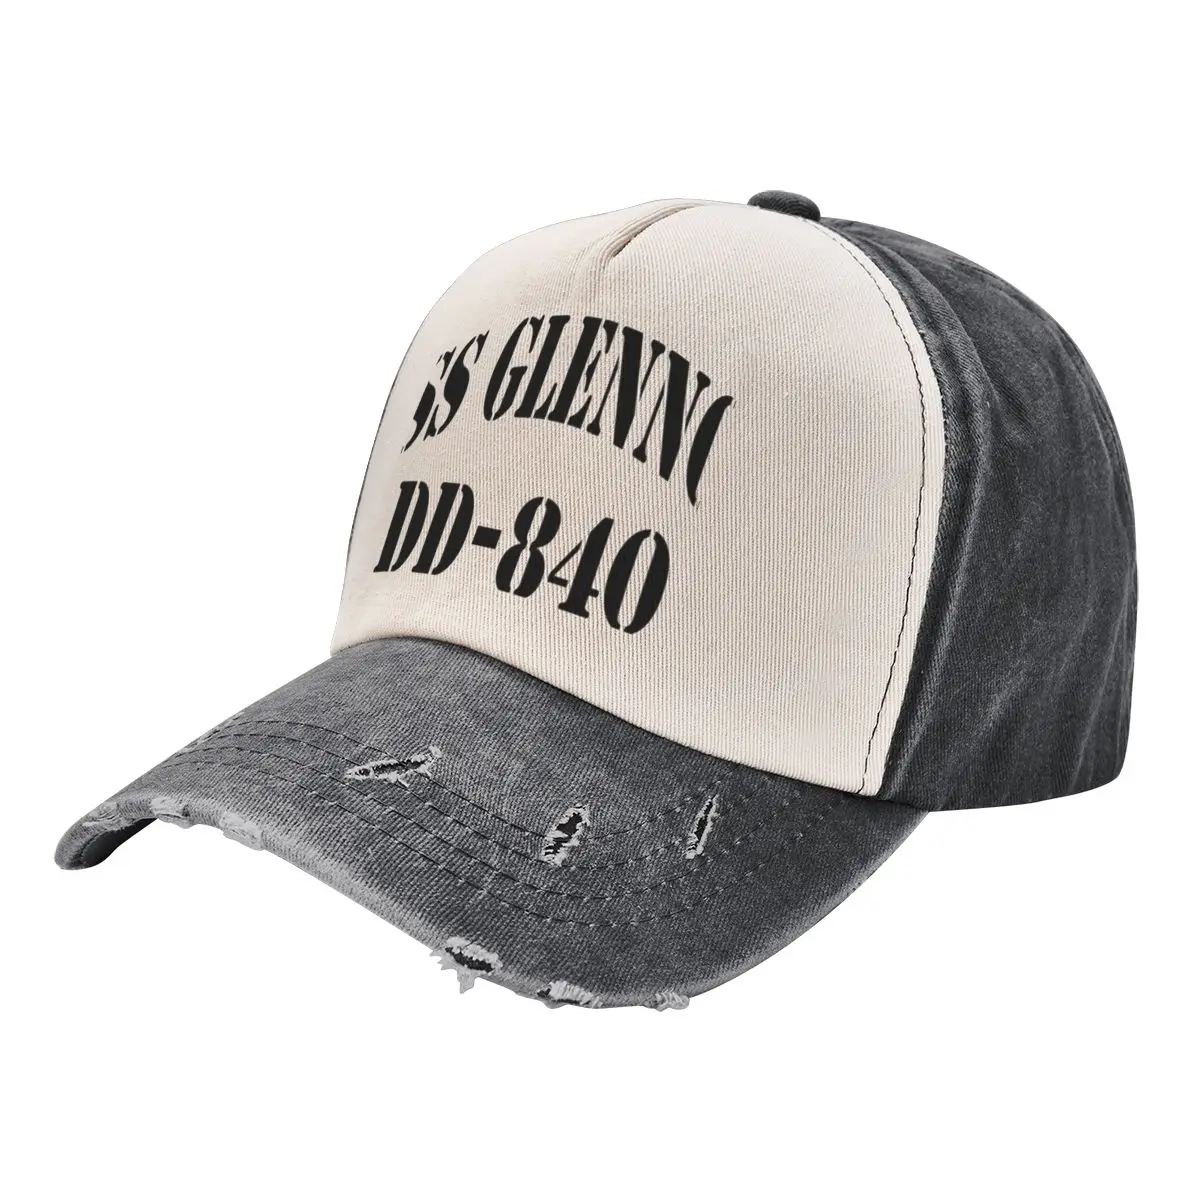 

USS GLENNON (DD-840) SHIP'S STORE Baseball Cap Ball Cap custom Hat Thermal Visor Cosplay Women's Hats For The Sun Men's